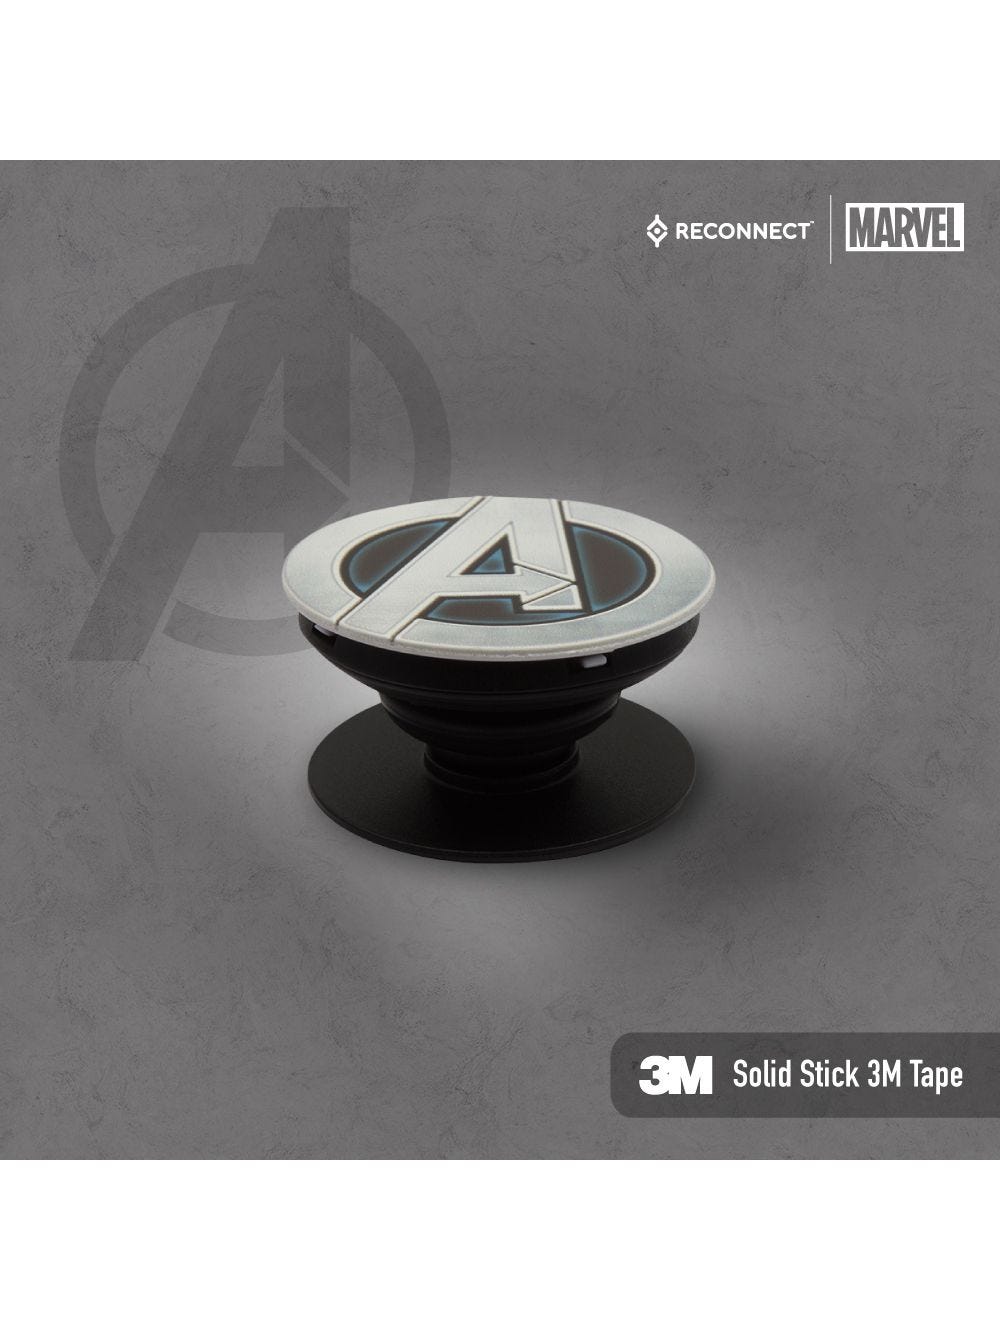 Marvel Avengers PoP Stand By Reconnect DPS101 AV